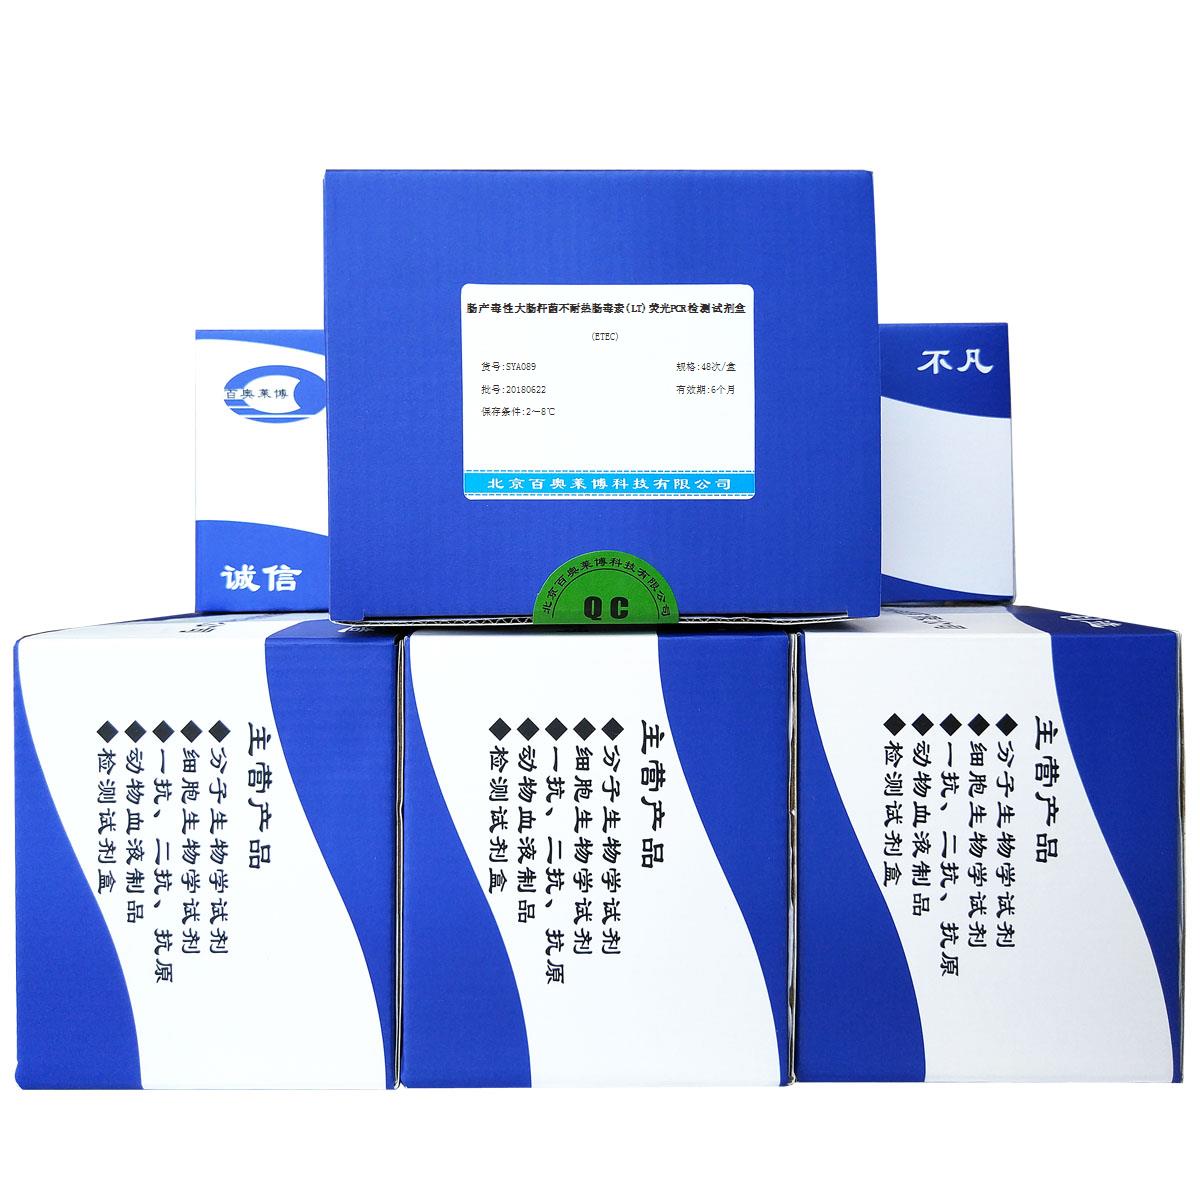 肠产毒性大肠杆菌不耐热肠毒素(LT)荧光PCR检测试剂盒(ETEC)优惠